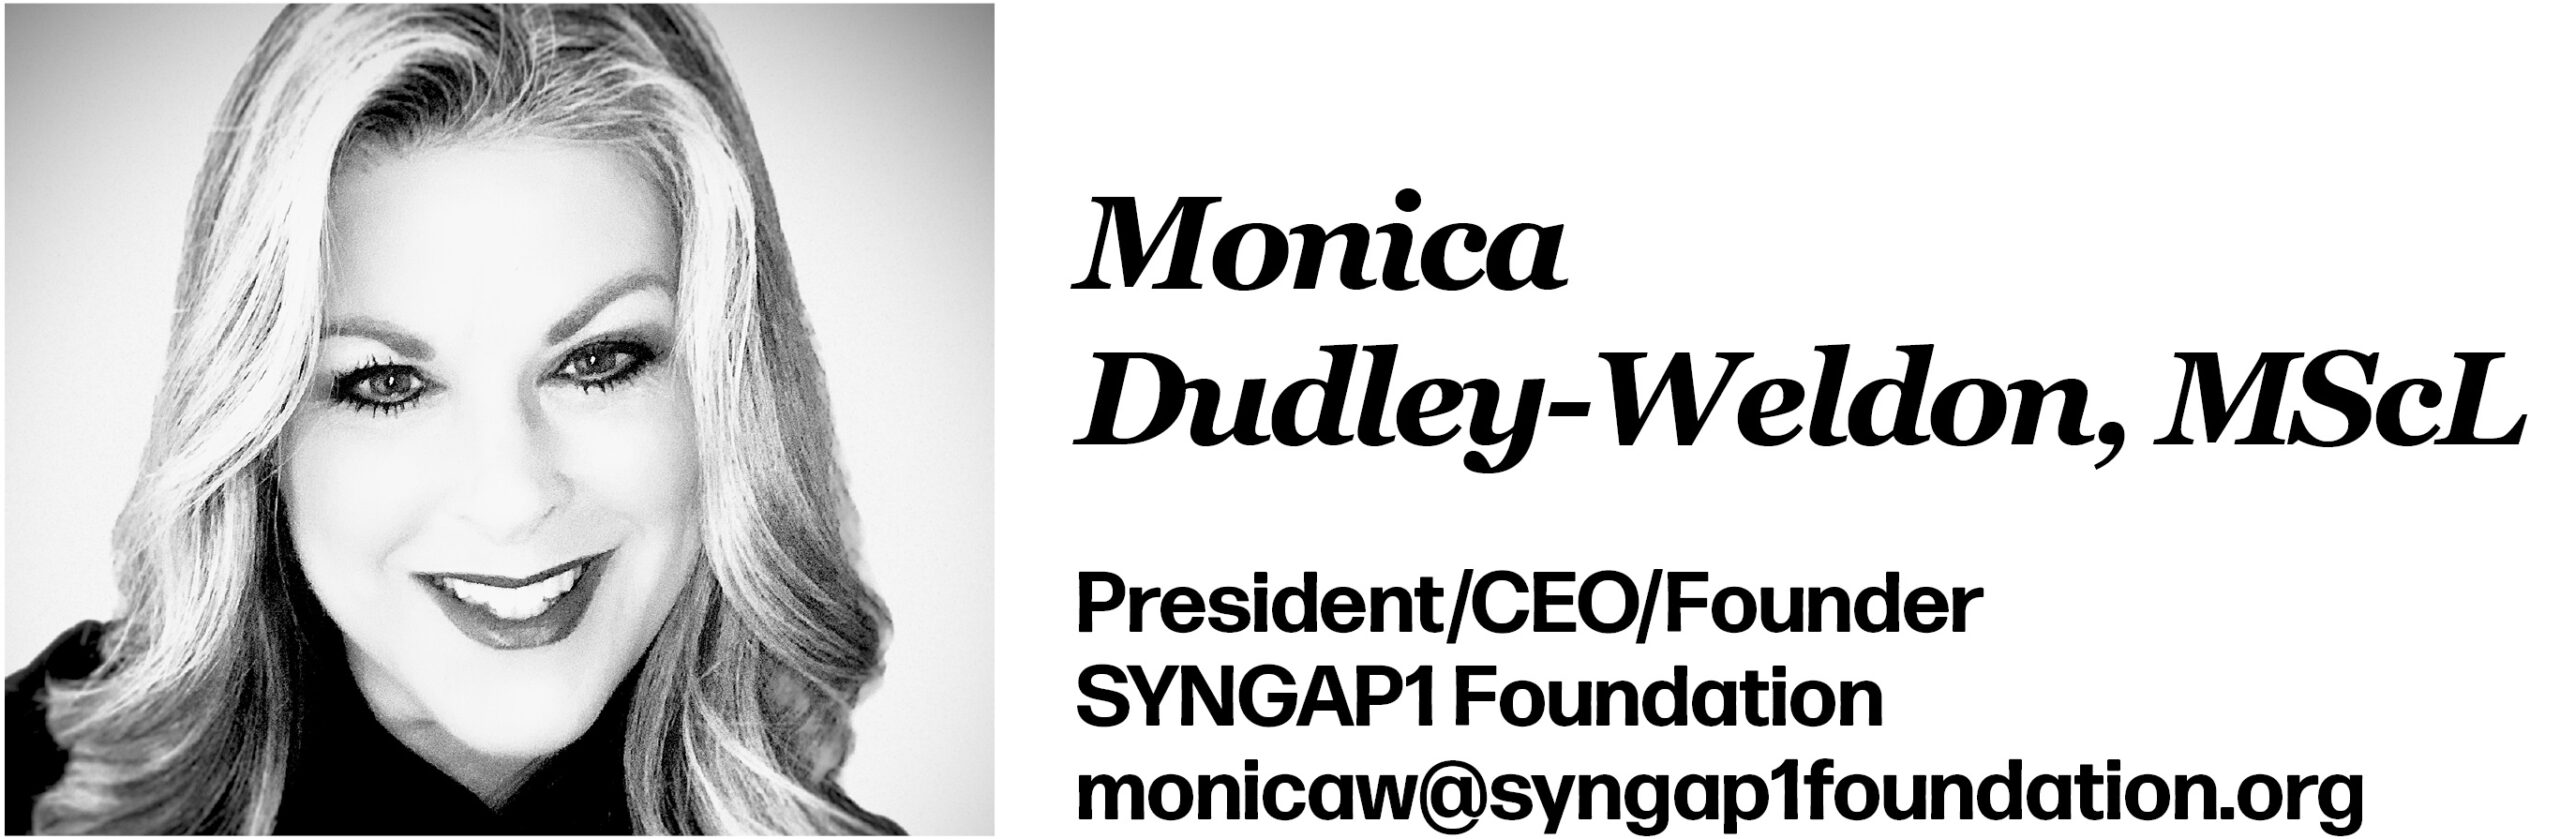 Monica Dudley-Weldon, MScL President/CEO/Founder SYNGAP1 Foundation monicaw@syngap1foundation.org